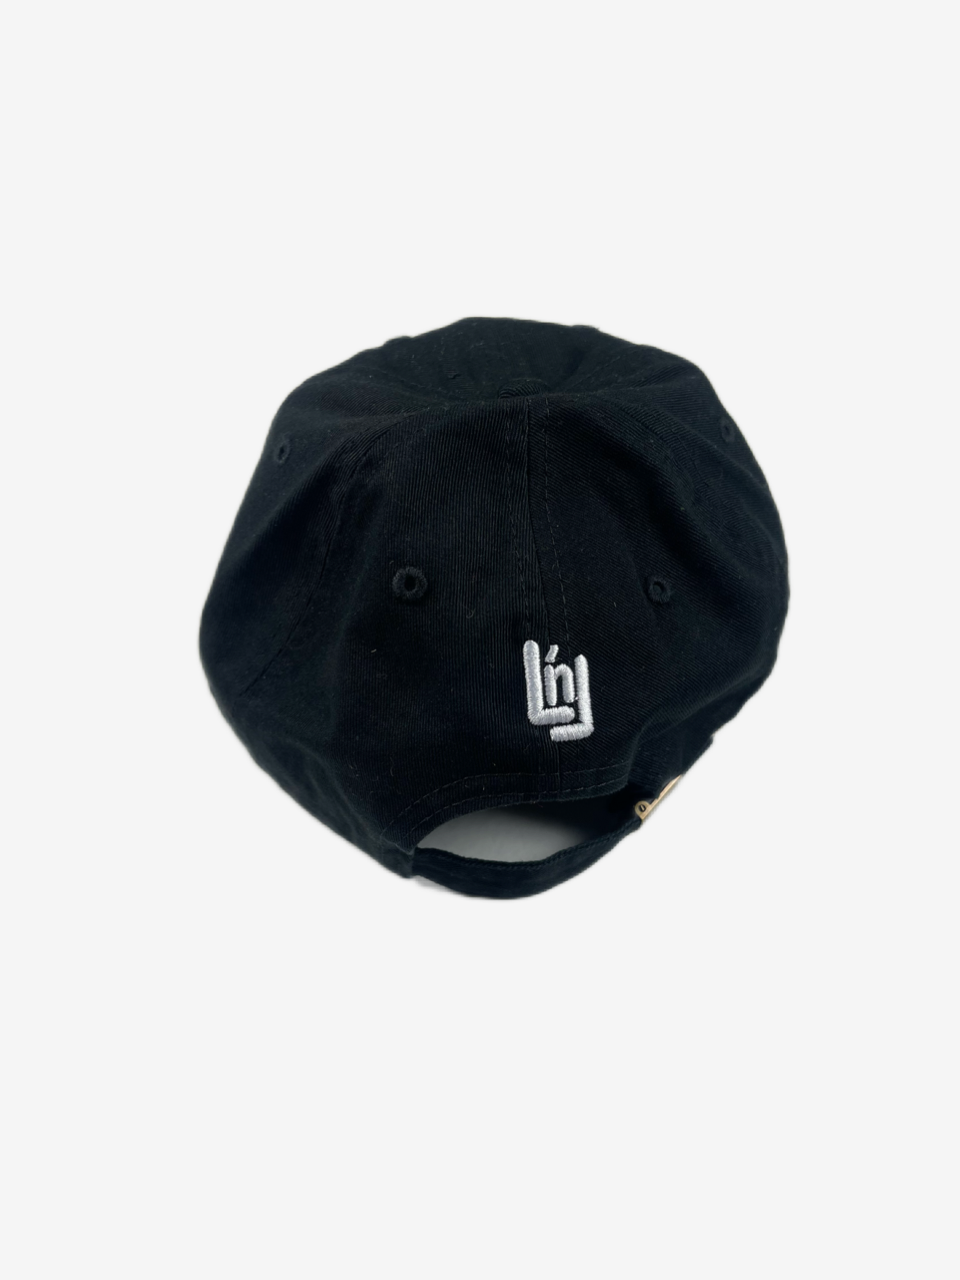 Signature Hat (Black)